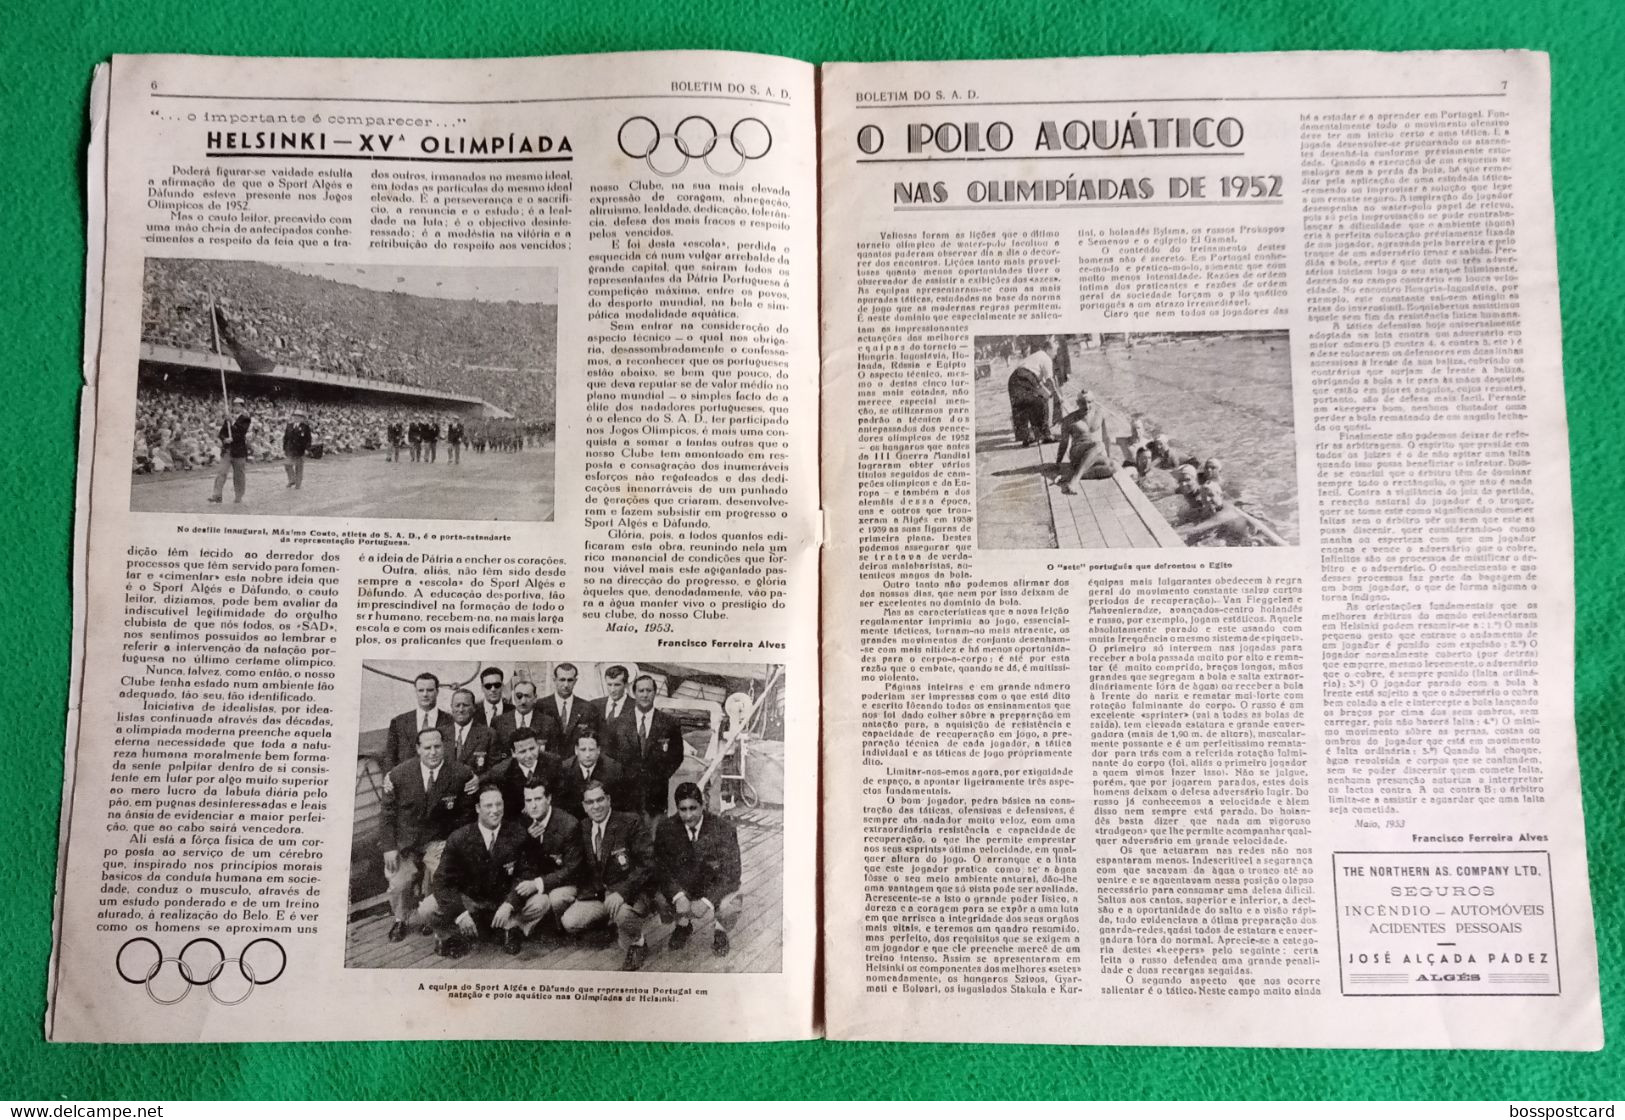 Algés - Sport Algés E Dafundo - Número Comemorativo Do XXXVIII Aniversário, 1953 - Publicidade - Portugal - Sport